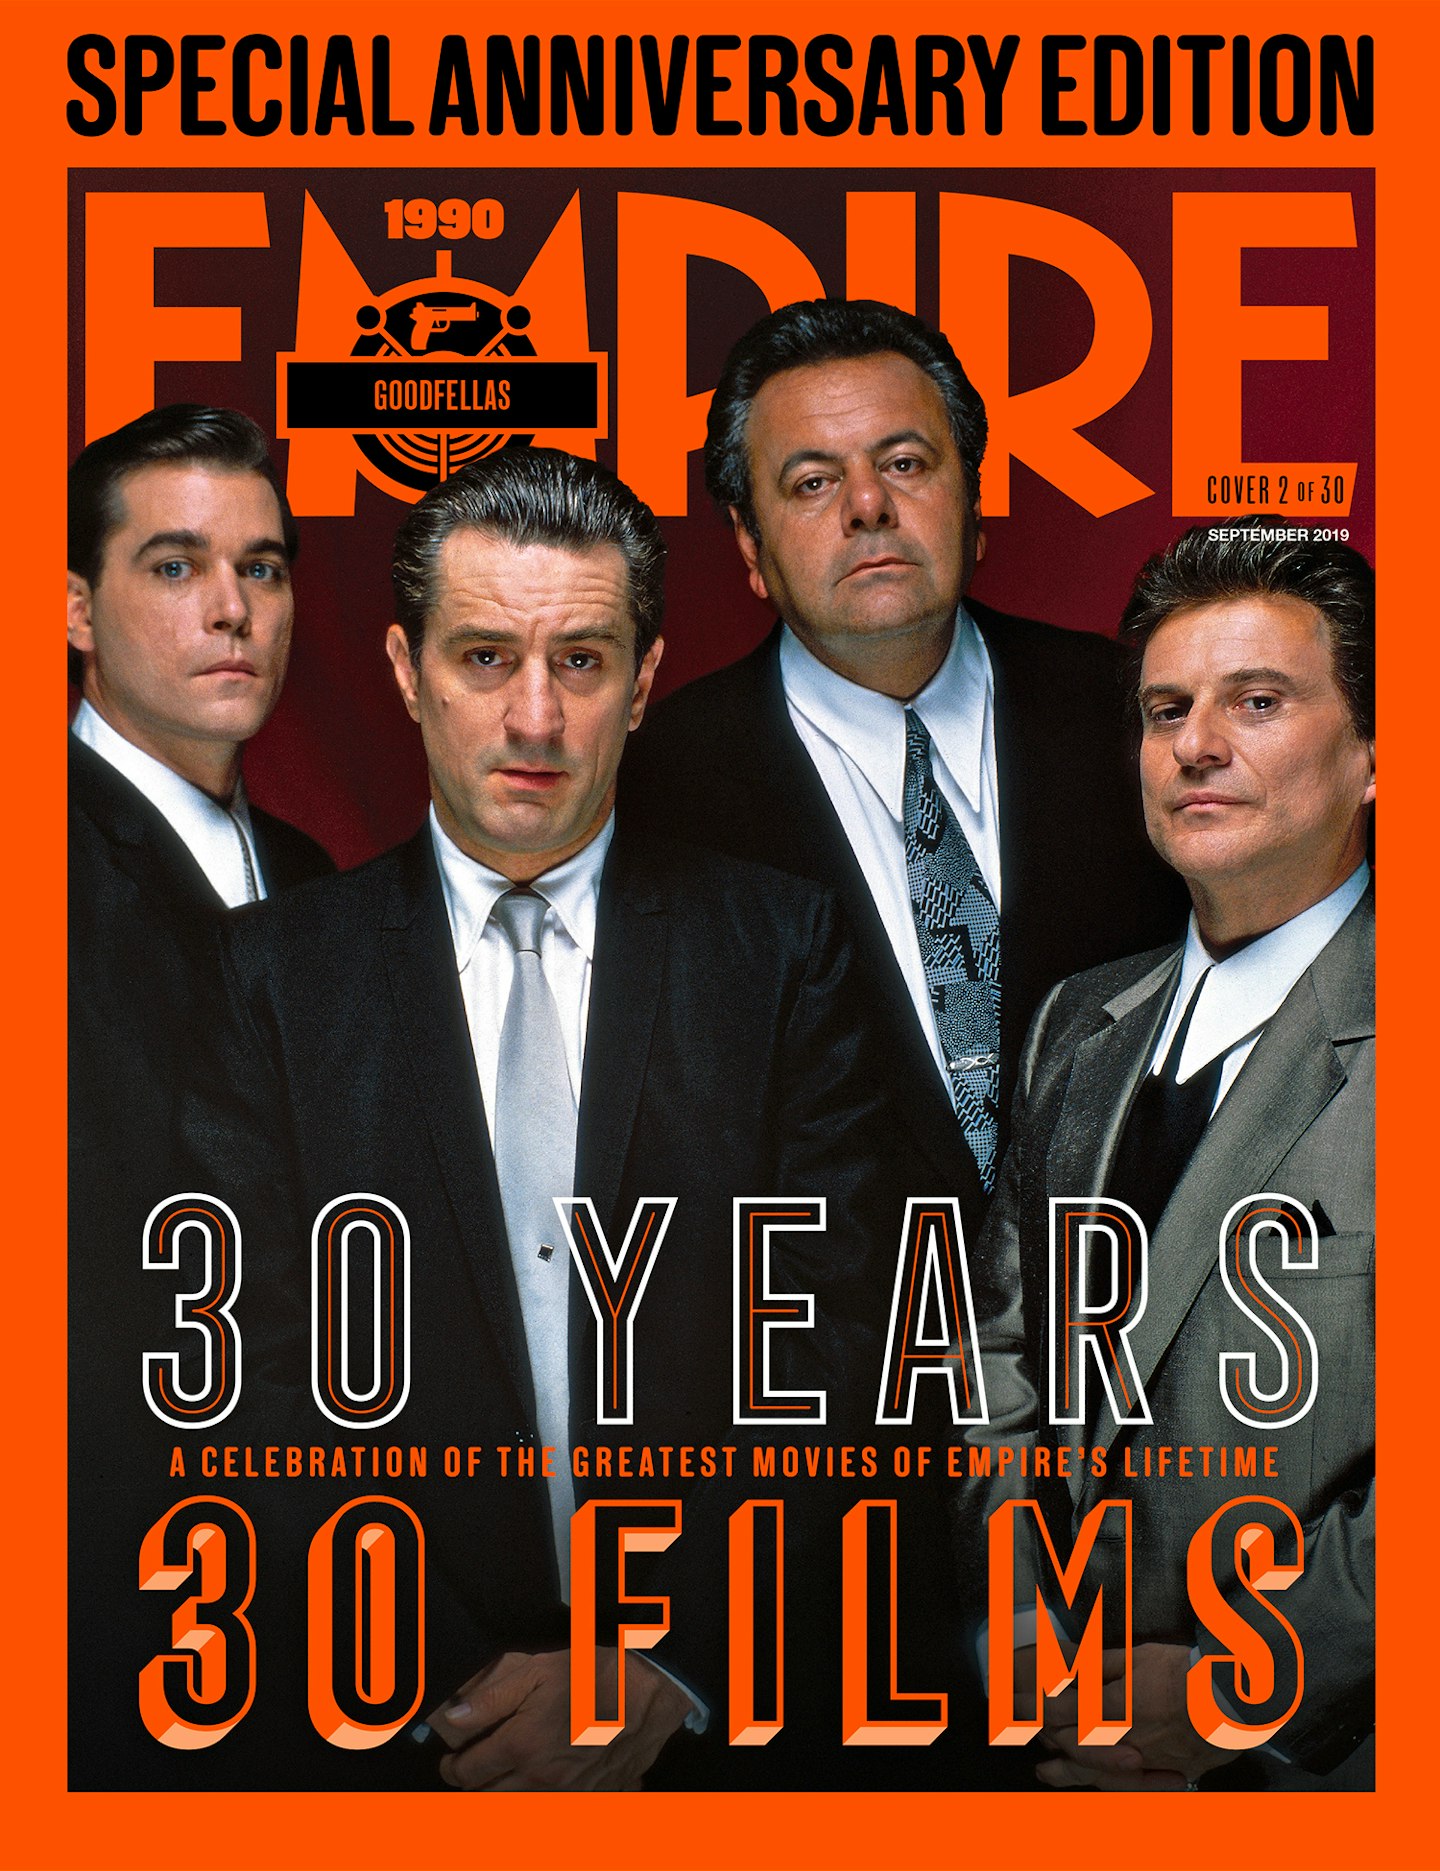 Empire's 30th Anniversary Edition Covers – Goodfellas